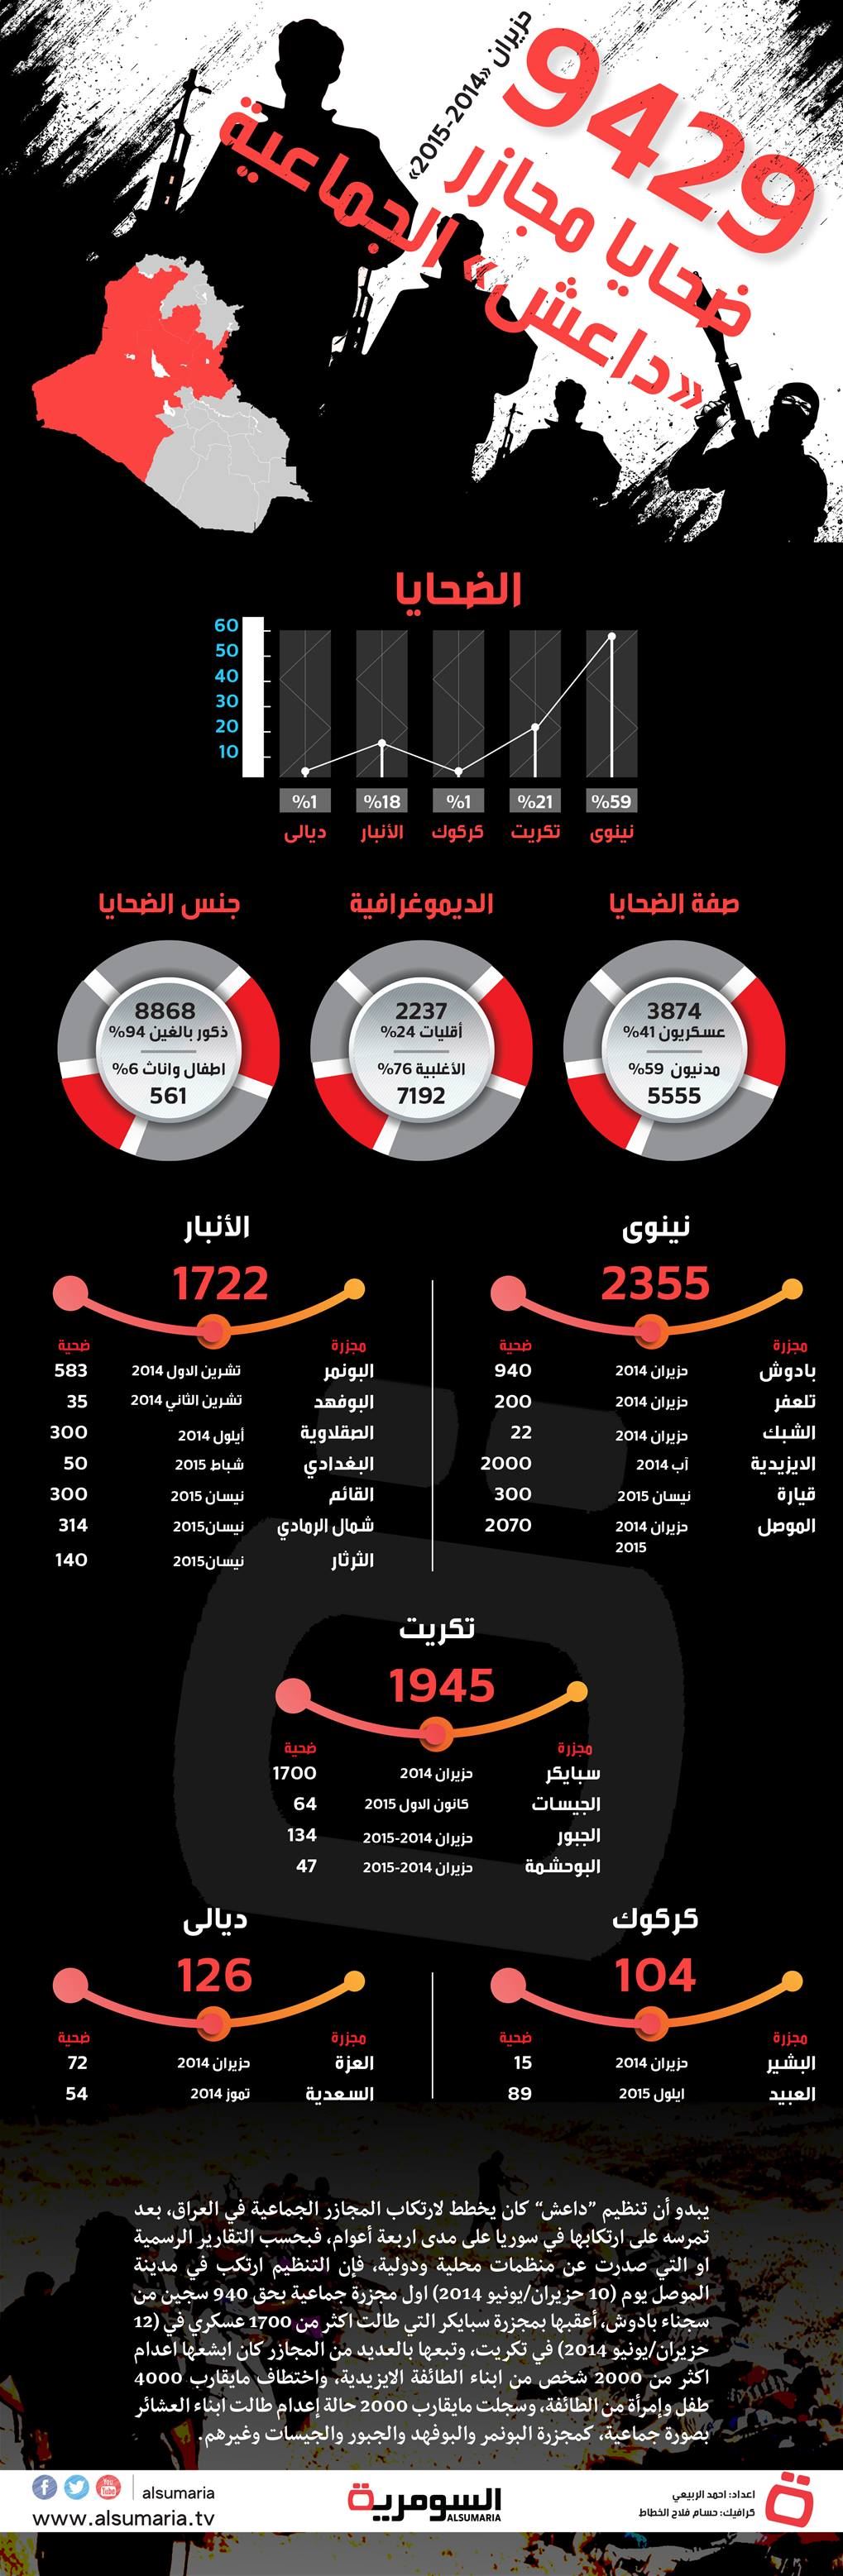 9429.. ضحايا مجازر داعش الجماعية وللاقليات نصيب 